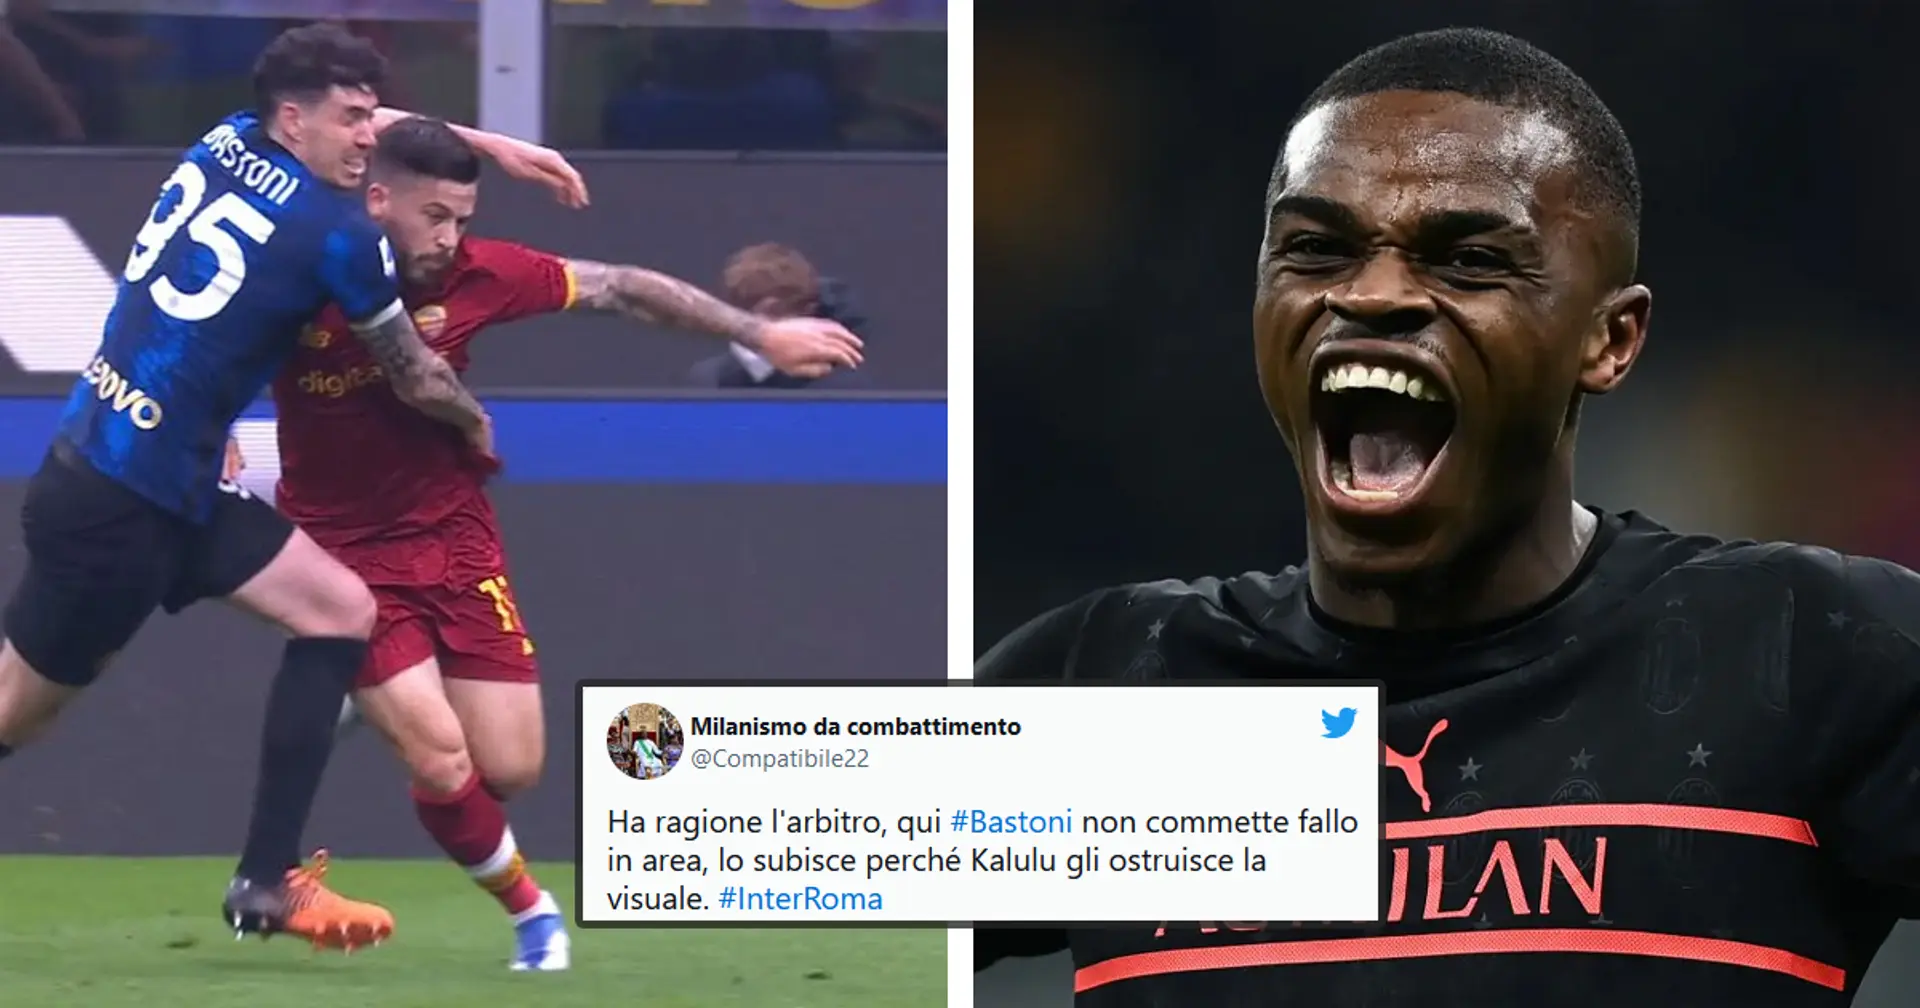 "È colpa di Kalulu!": i tifosi del Milan ironizzano sull'ultimo 'aiutino' degli arbitri a favore dell'Inter